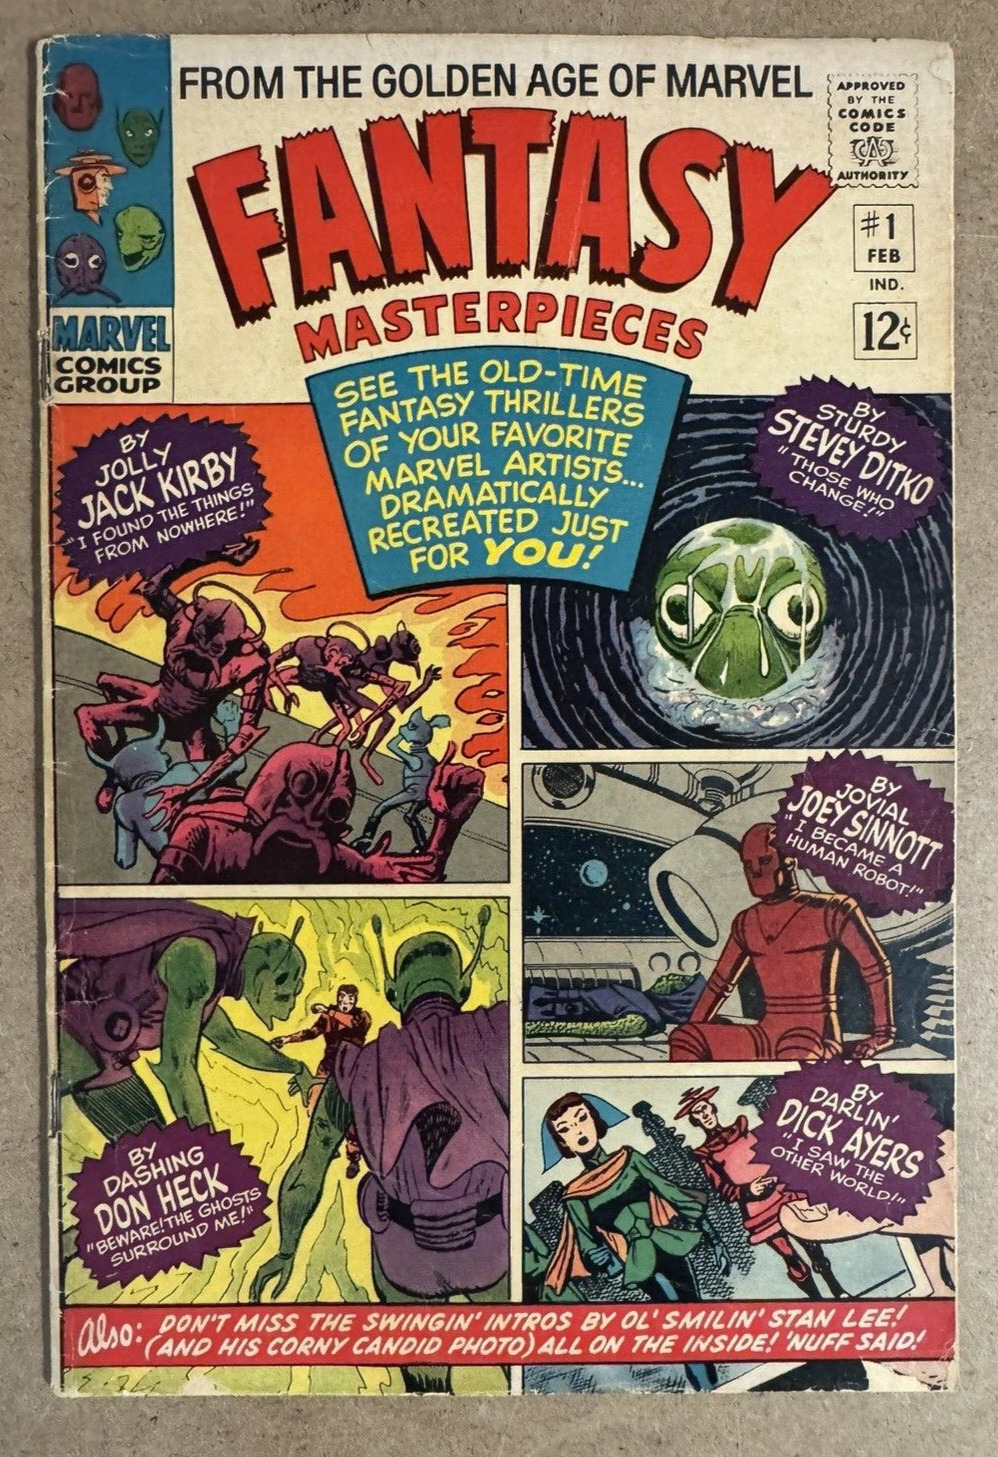 Fantasy Masterpieces #1 - Feb 1966 - Vol.1 - Minor Key - (499A)